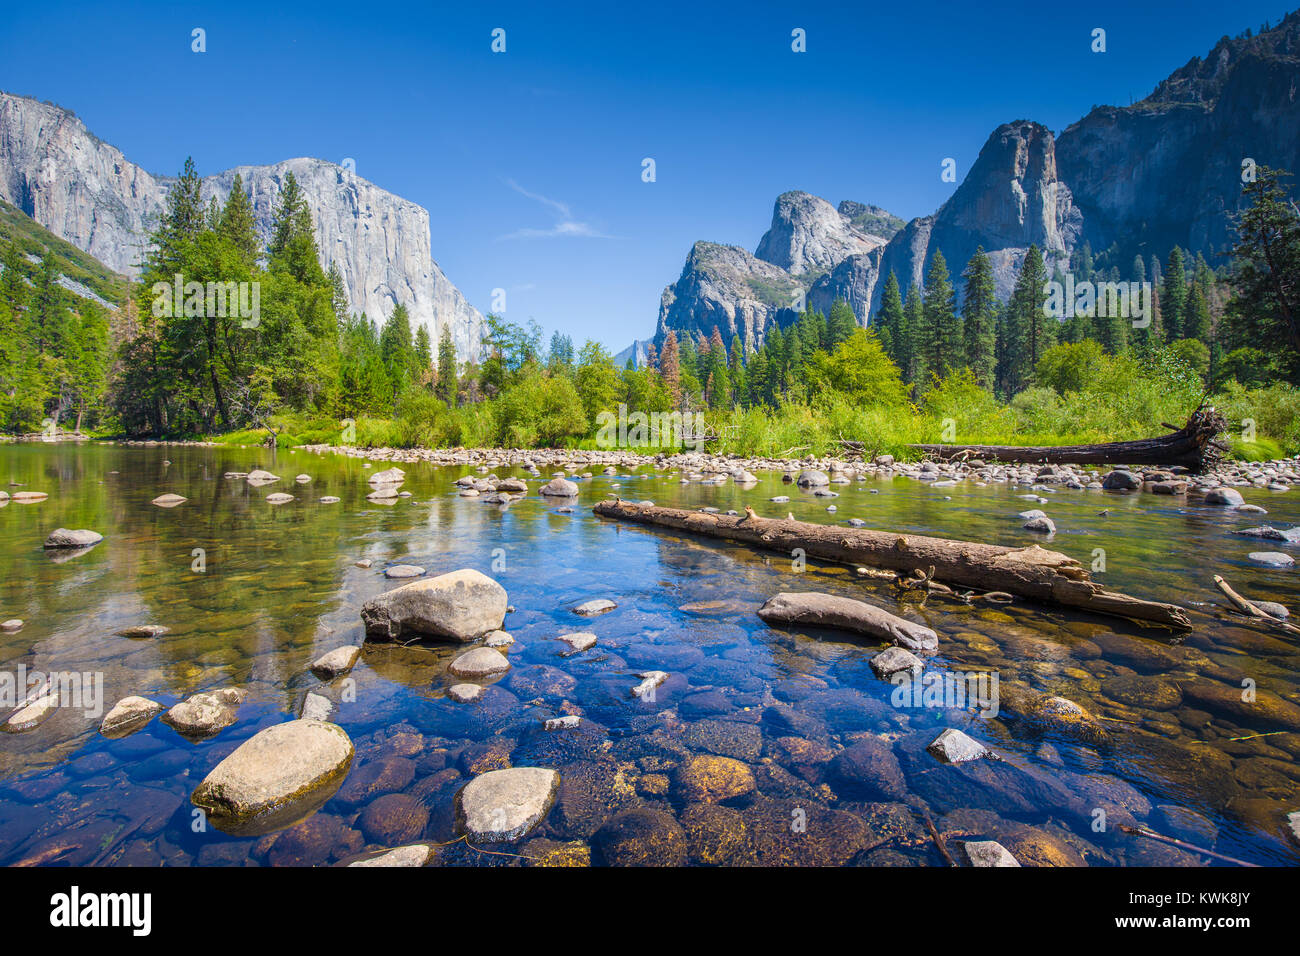 Visualizzazione classica di scenic Yosemite Valley con il famoso El Capitan arrampicata su roccia vertice e idilliaco fiume Merced in una giornata di sole in estate, CALIFORNIA, STATI UNITI D'AMERICA Foto Stock